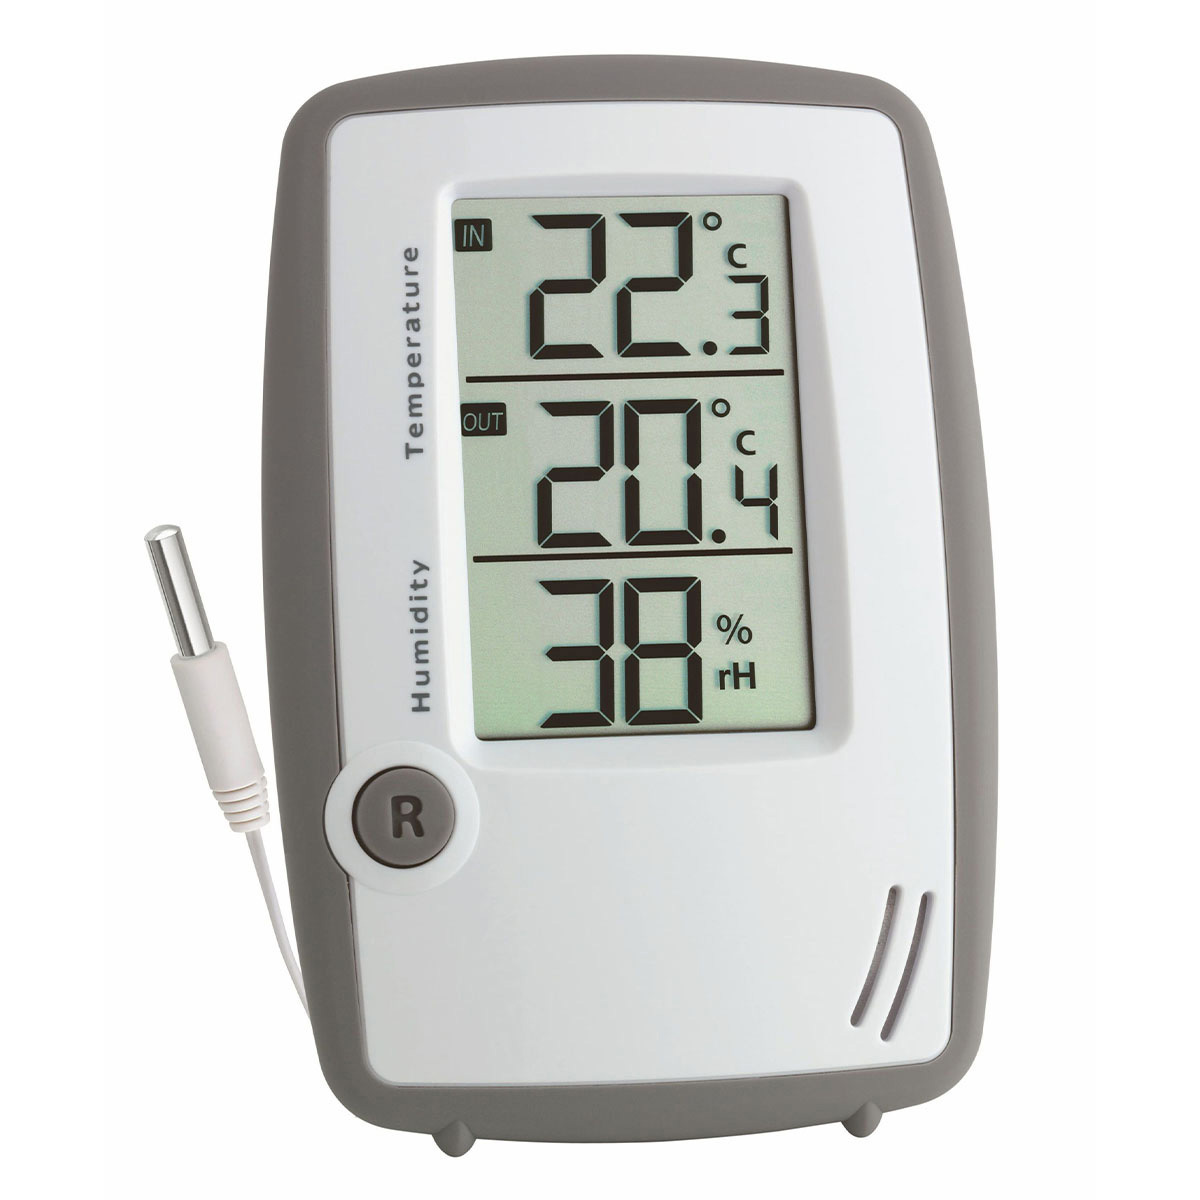 Thermometer 白色 Hygrometer-Temperatur-Feuchtigkeitsmessgerät digitales Thermostat Hygrometer-Temperatur-Feuchtigkeitsmessgerät Großes LCD-Display Max/Min-Aufzeichnung 